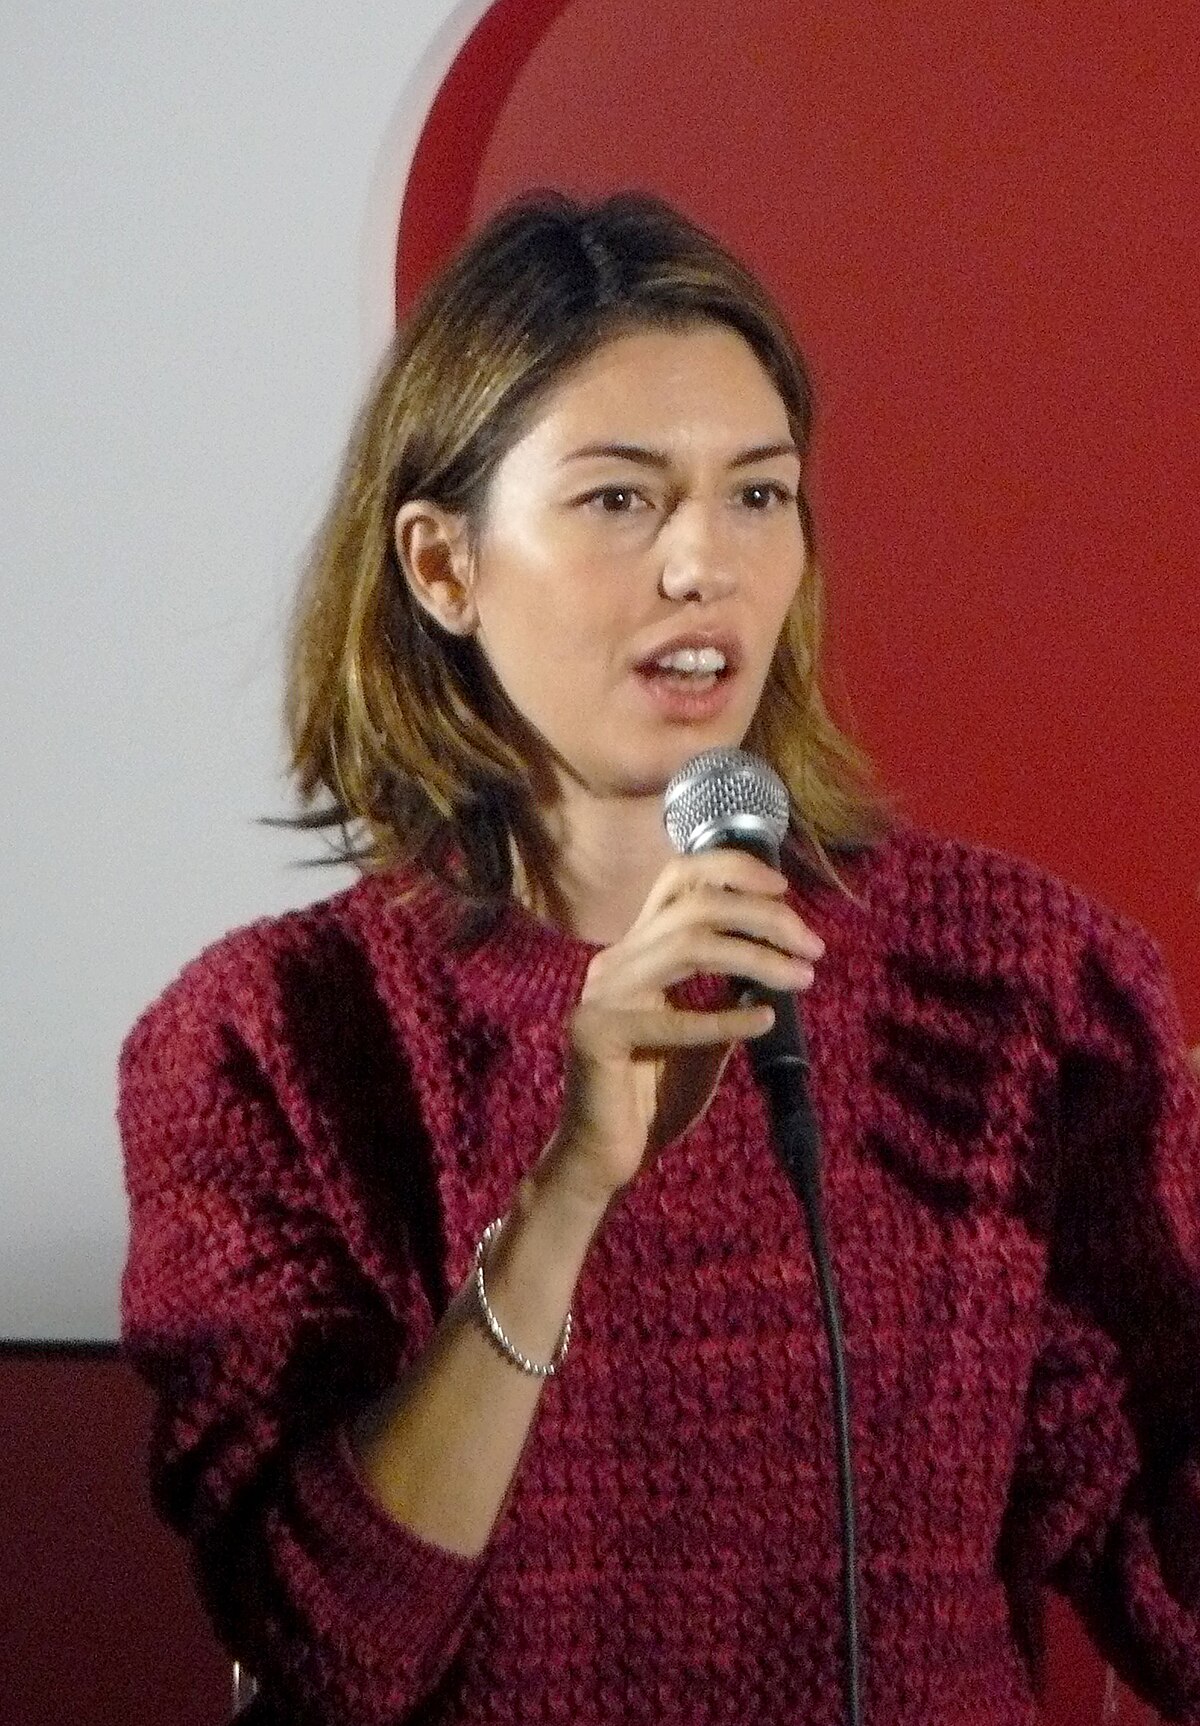 Sofia Coppola, Oscars Wiki